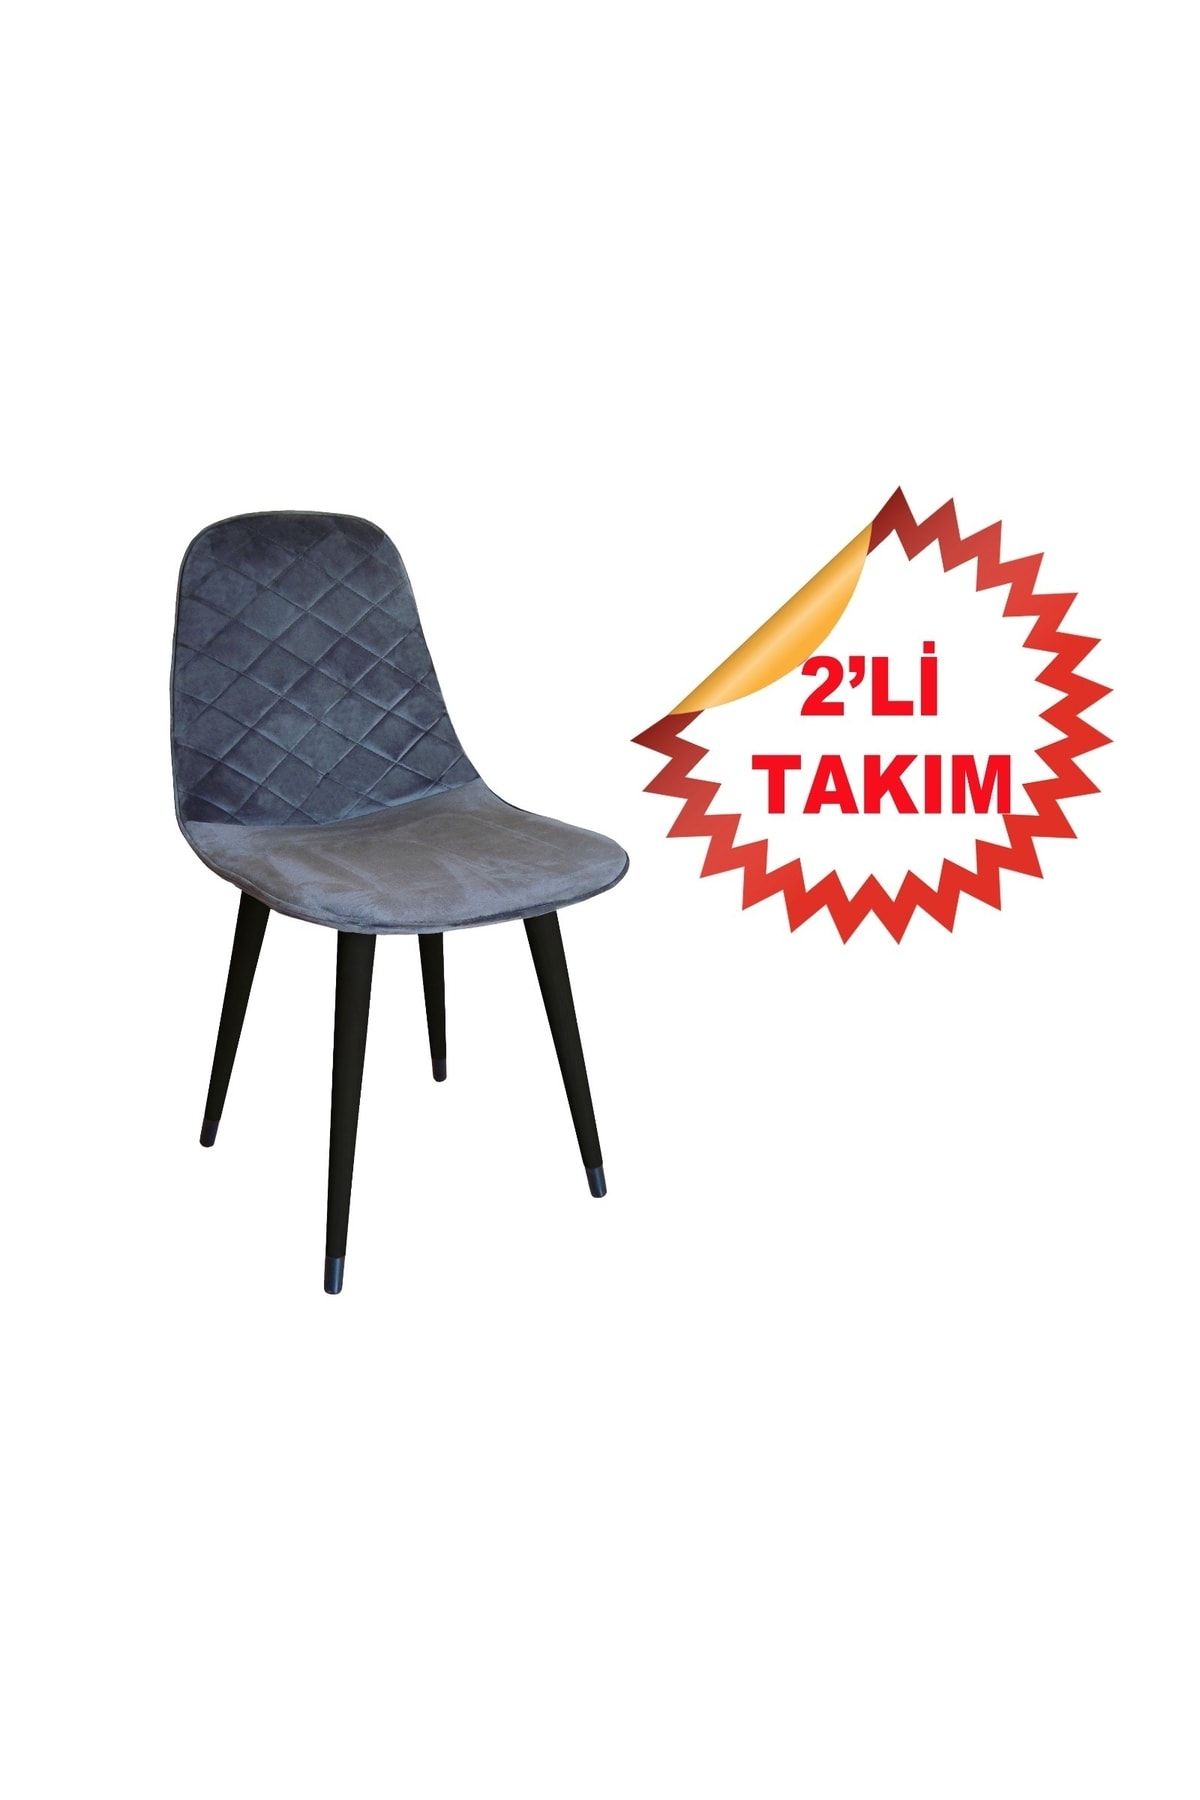 NETAKS Estelia Truva 2 Adet Ergonomik Boyalı Ahşap Ayaklı Dikişli Kaliteli Sandalye 4 Renk Şeçeneği